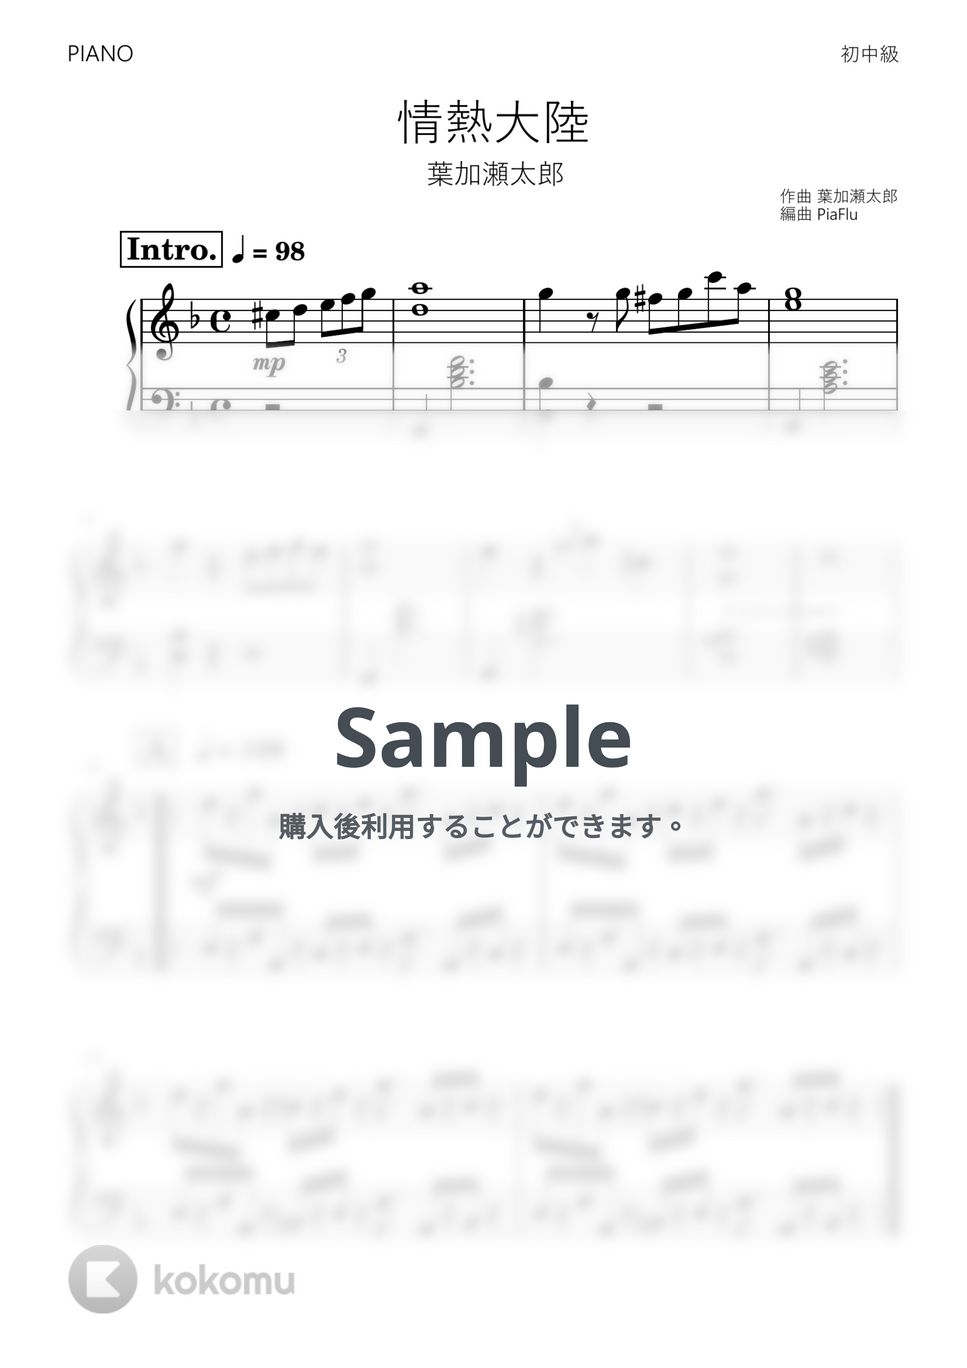 葉加瀬太郎 - 情熱大陸 (ピアノ初～中級) by PiaFlu